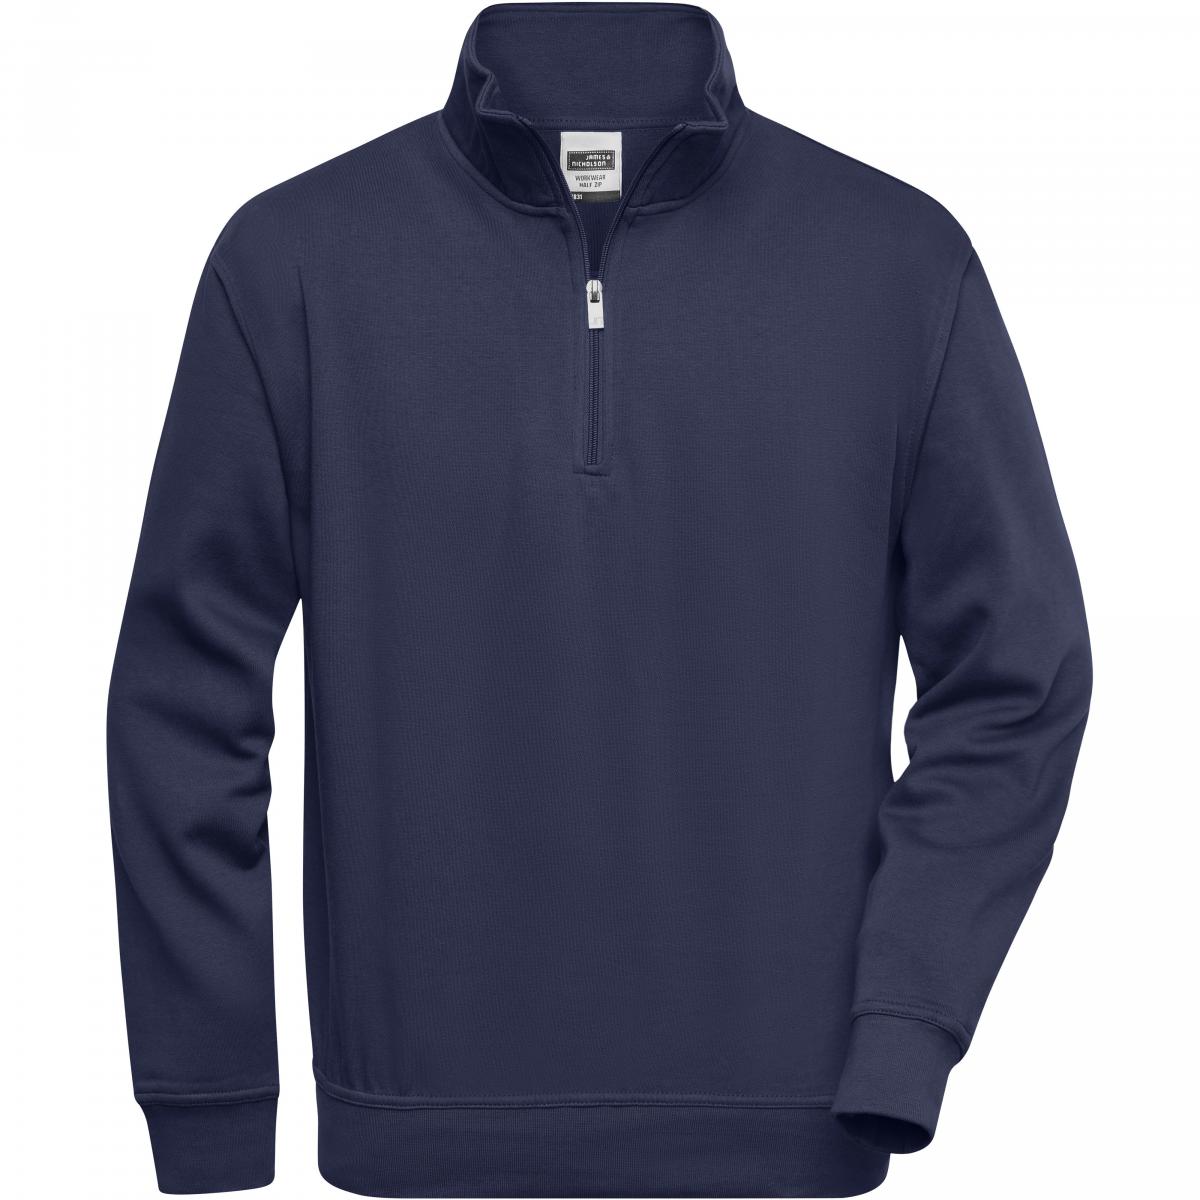 Hersteller: James+Nicholson Herstellernummer: JN831 Artikelbezeichnung: Workwear Half Zip Sweatshirt +Waschbar bis 60 °C Farbe: Navy